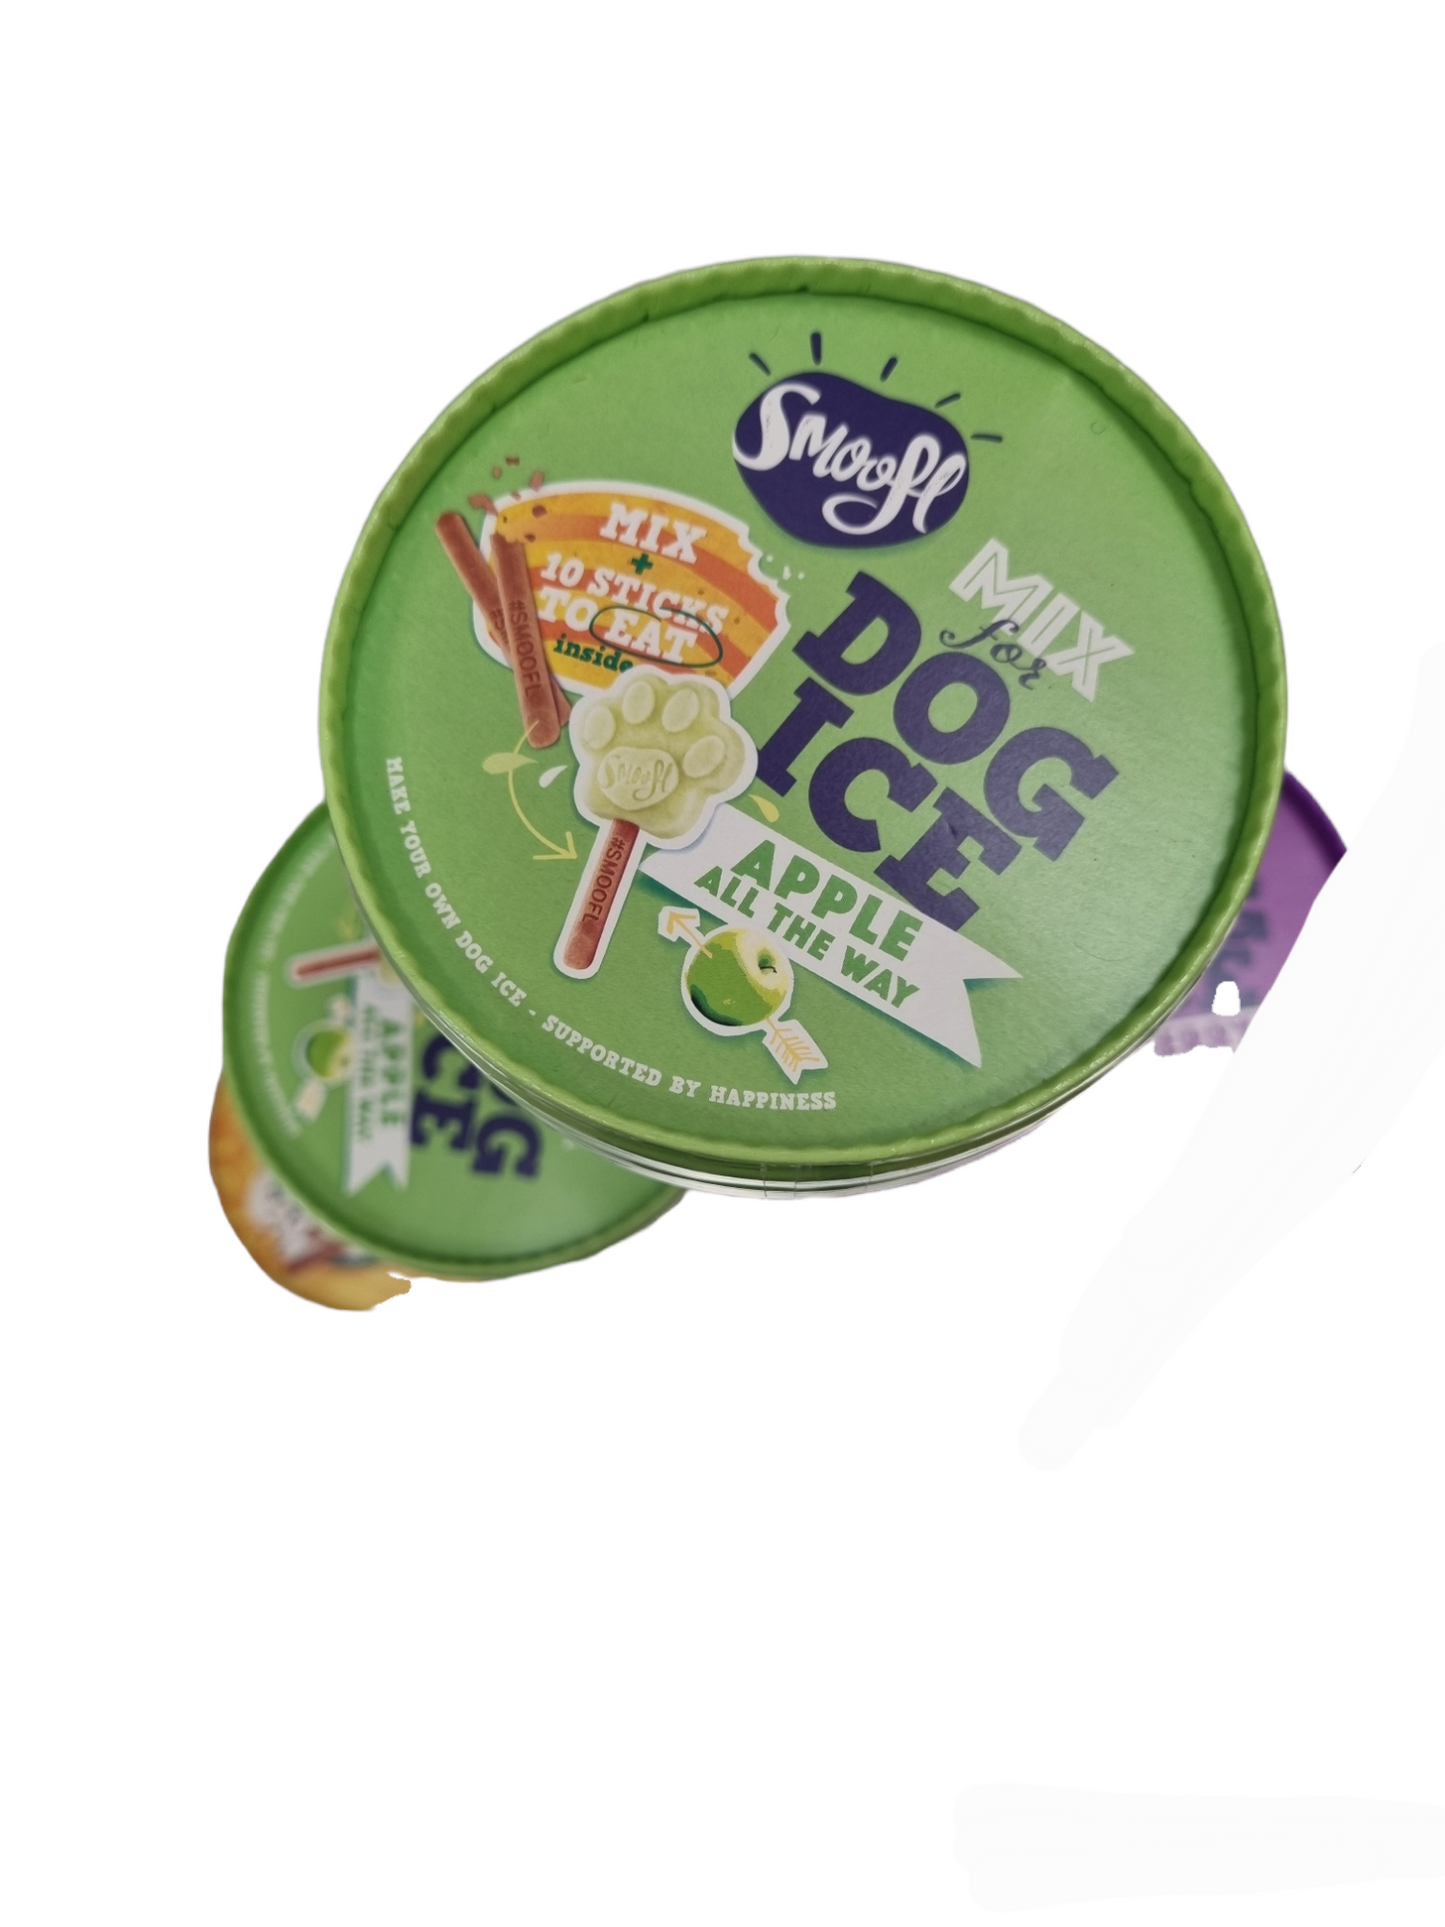 SMOOFL gelato per cani. Puppy e adult